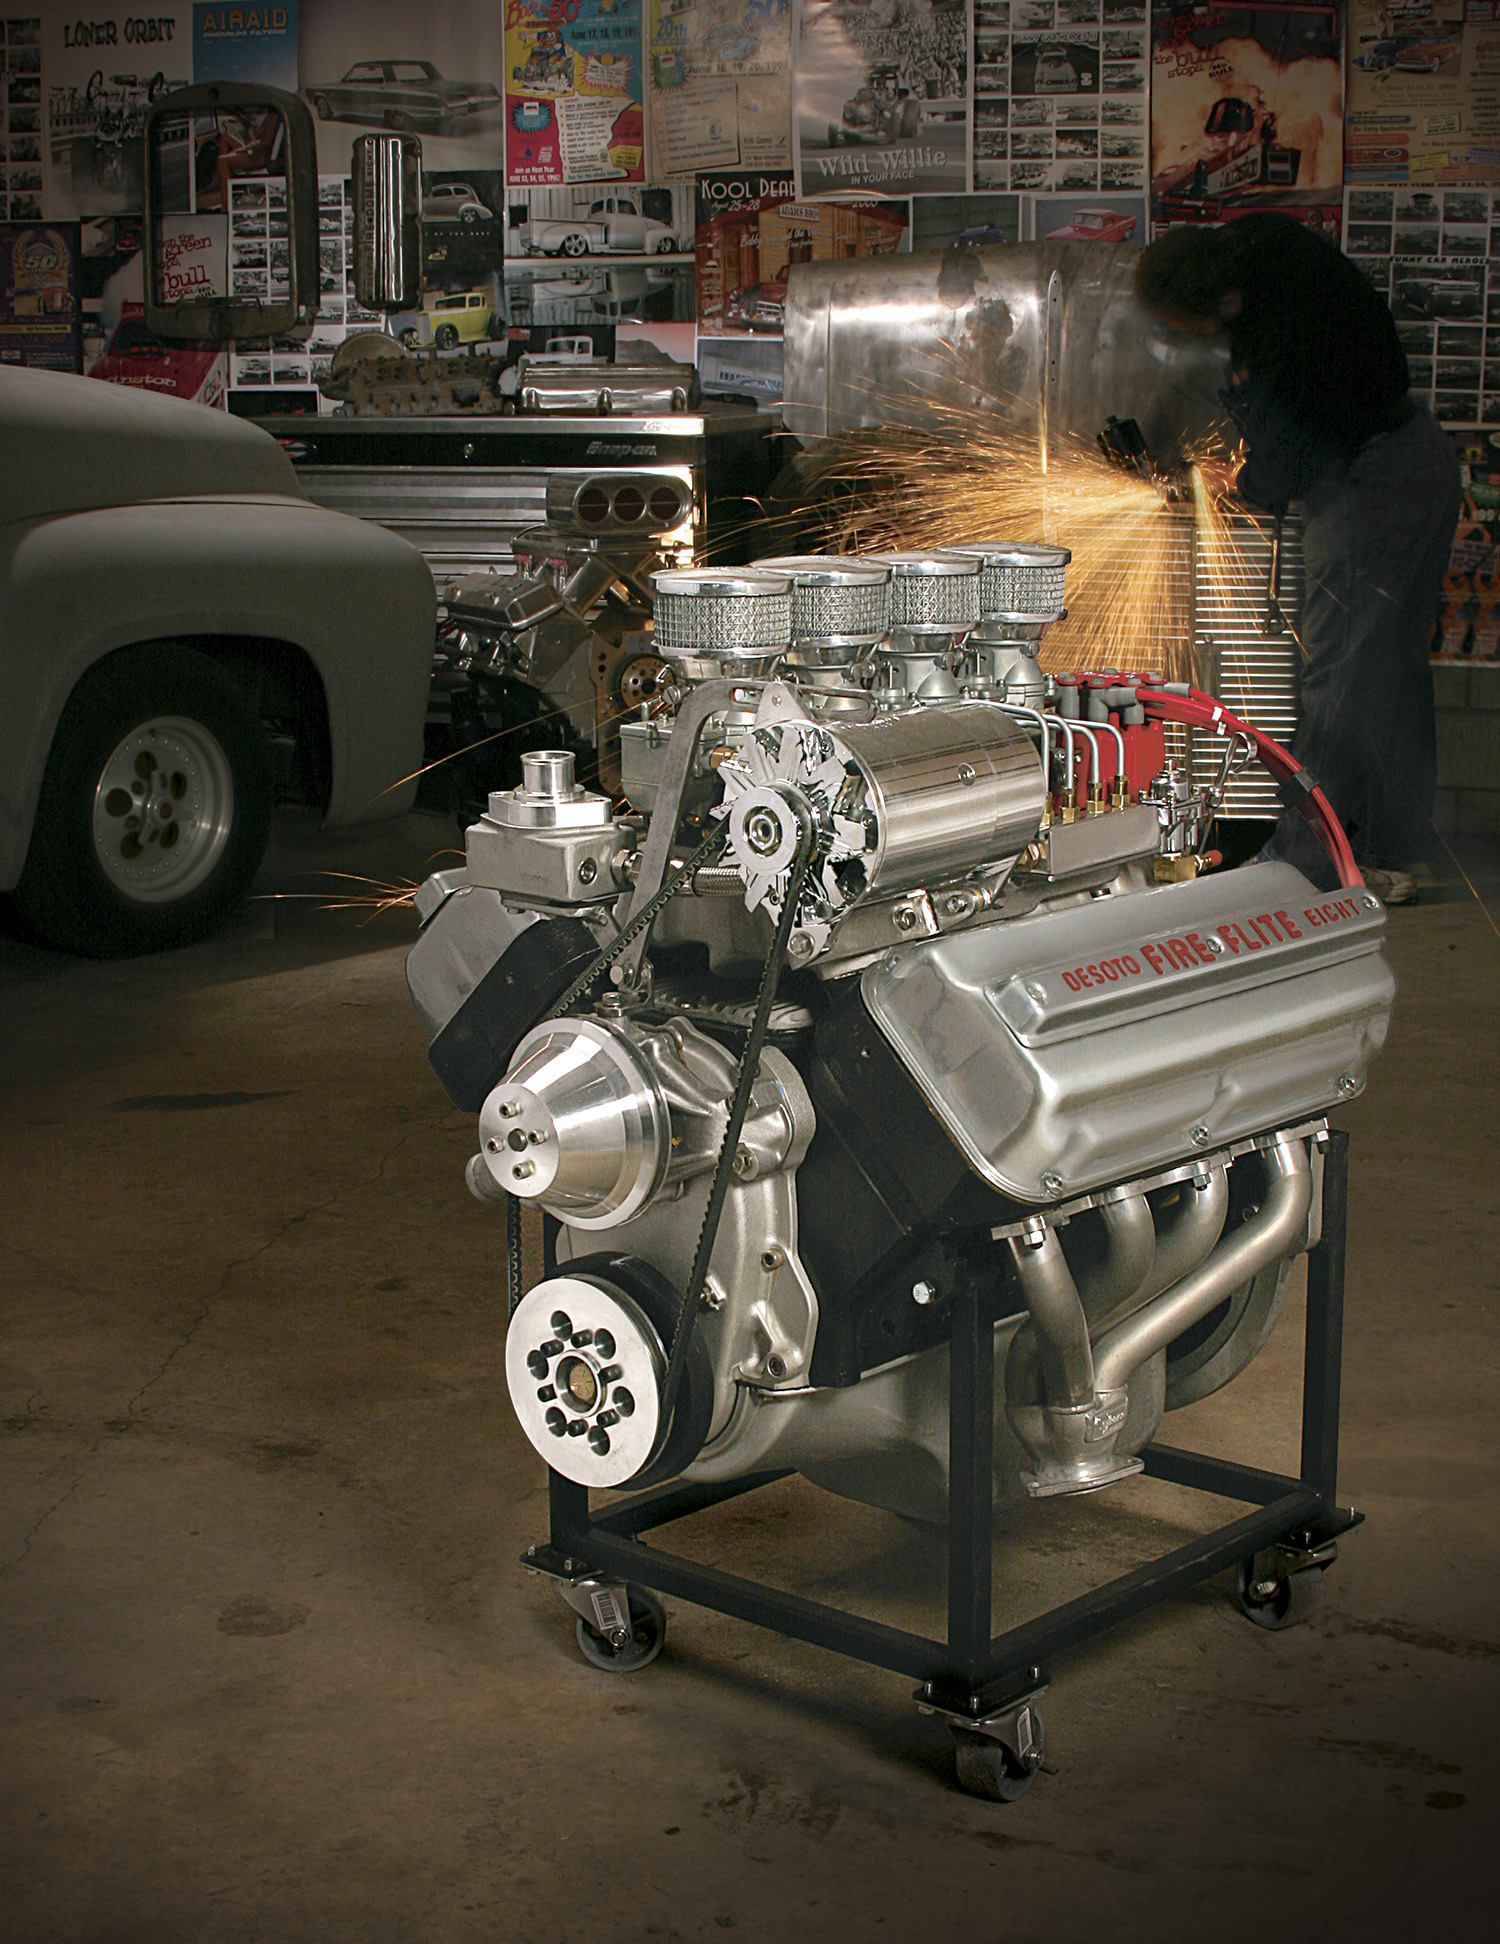 Desoto Hemi Engine